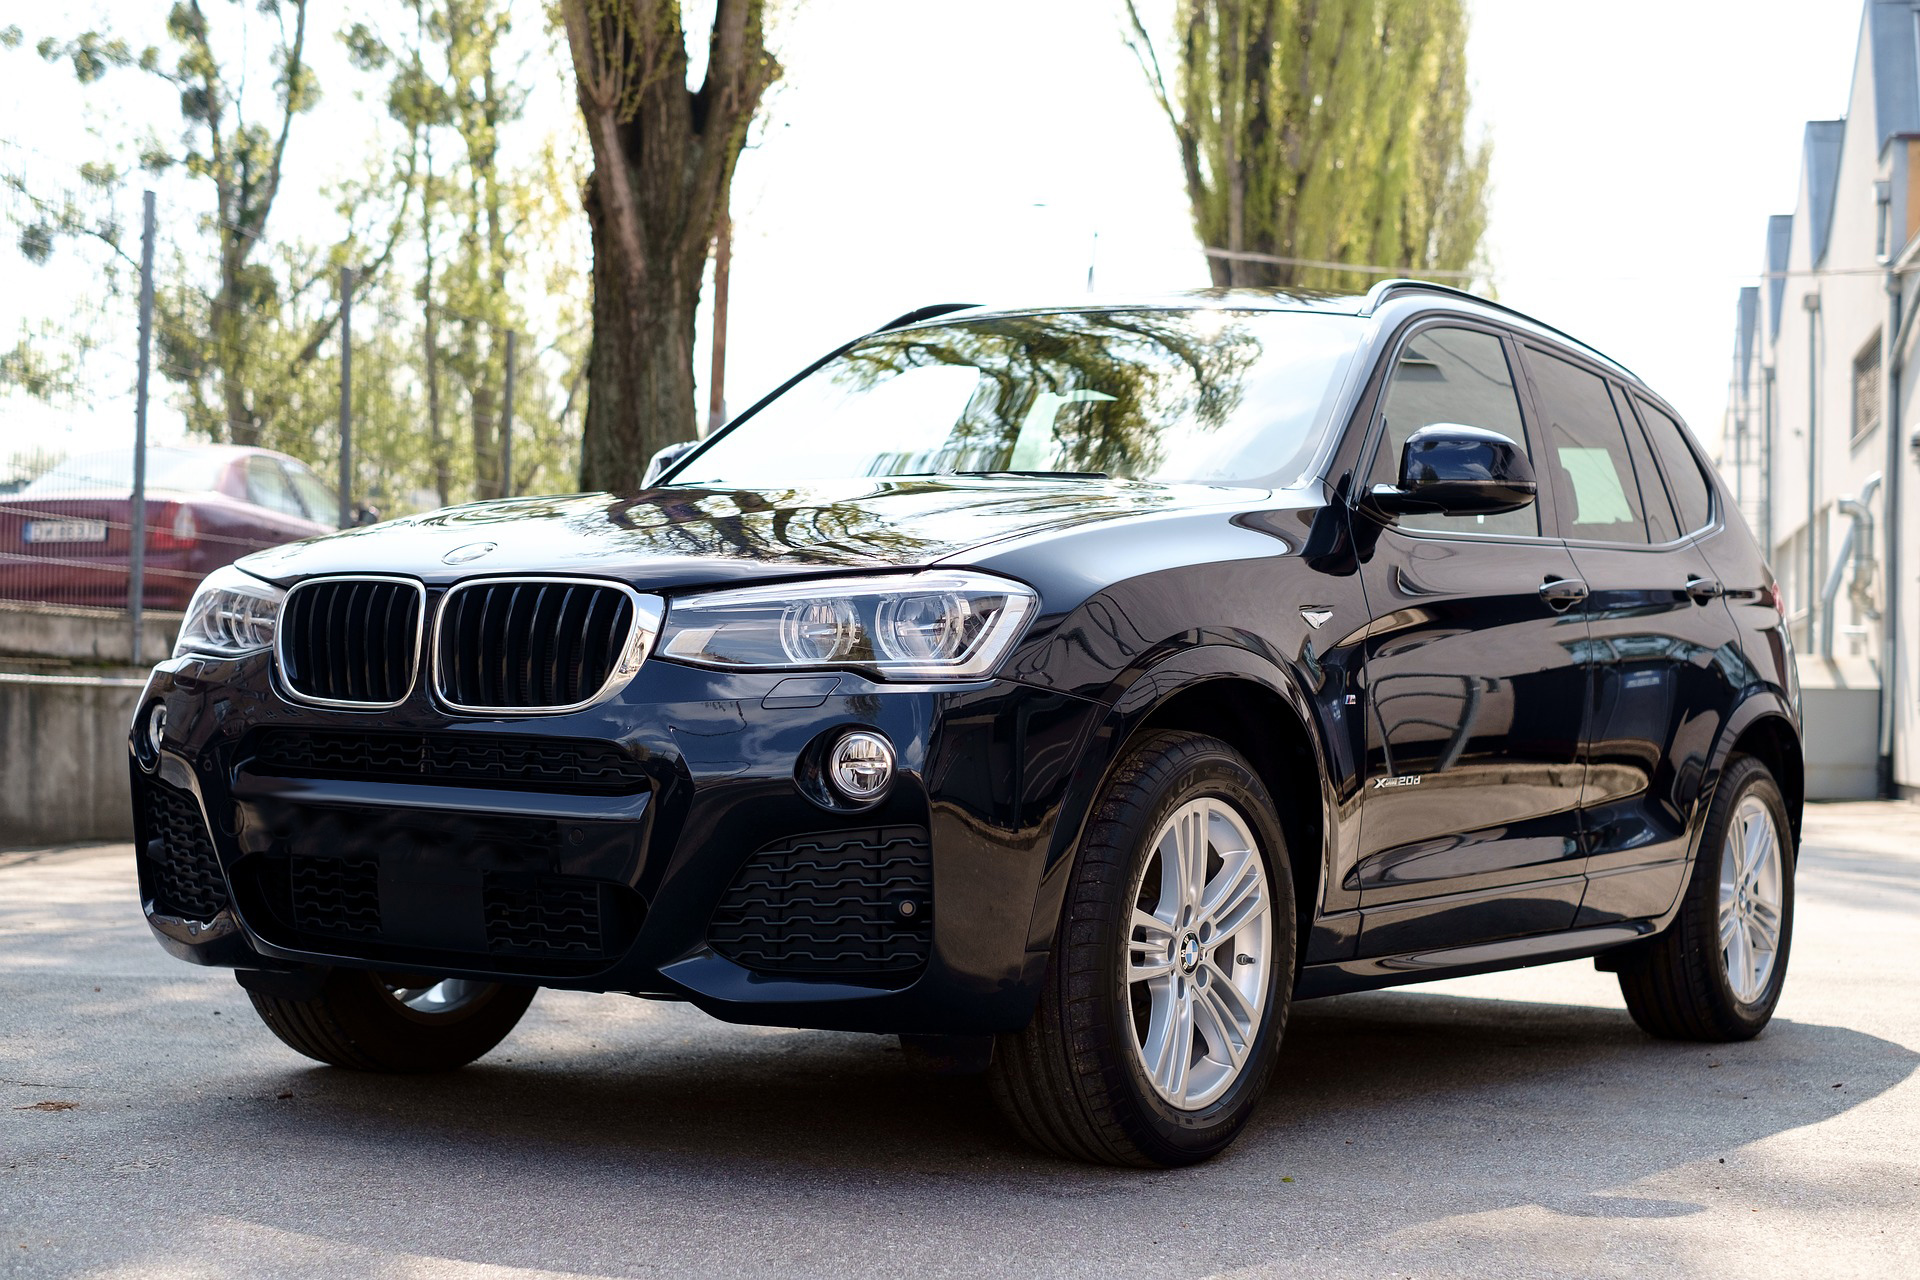 New BMW X3 | Car Insurance News | Hippo.co.za